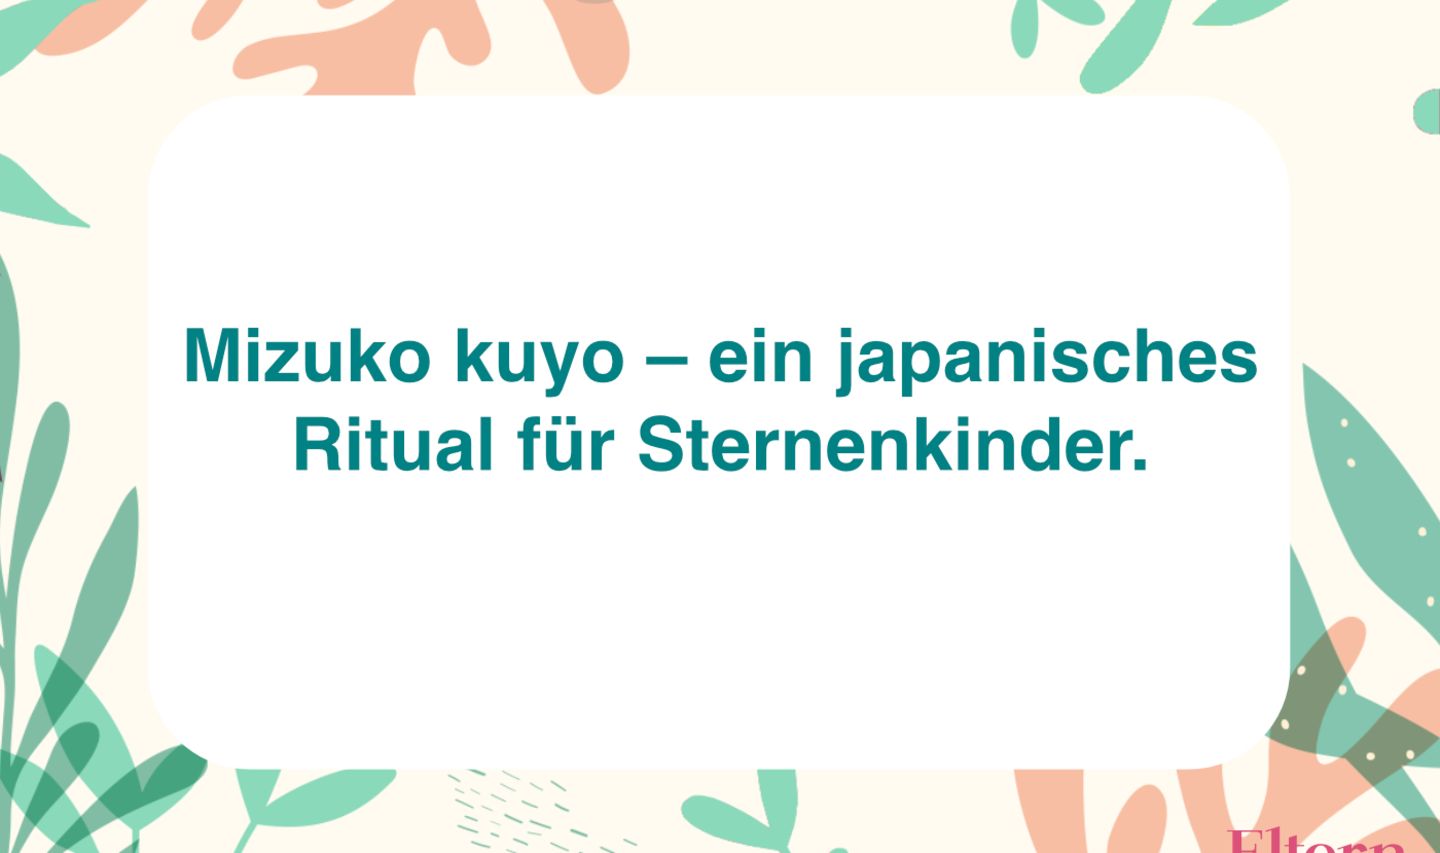 rituale-fehlgeburt-sternenkind-mizuko-kuyo